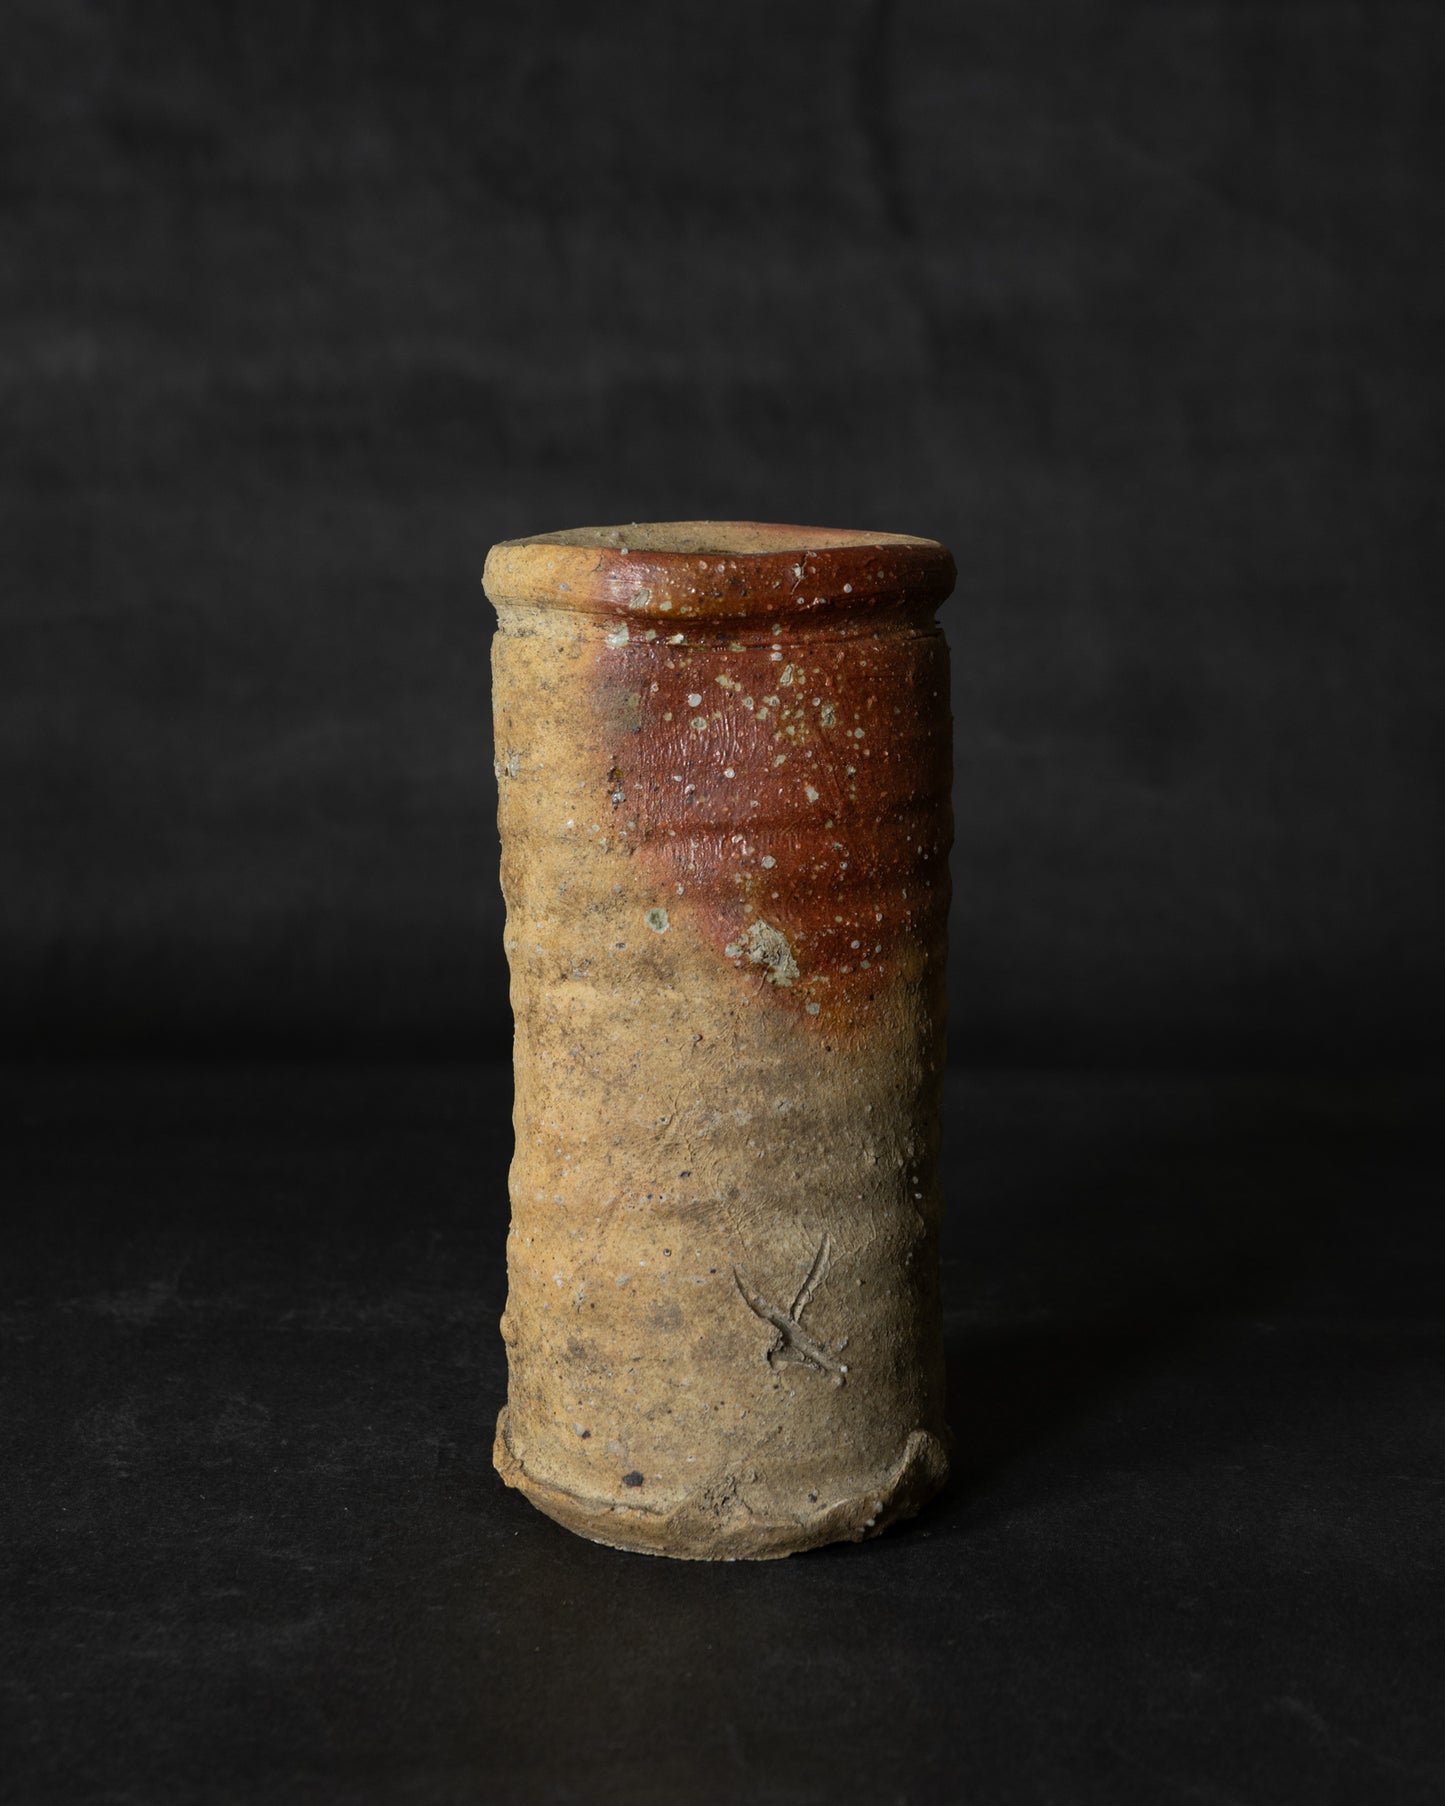 信楽花瓶 (大型) (st00445)